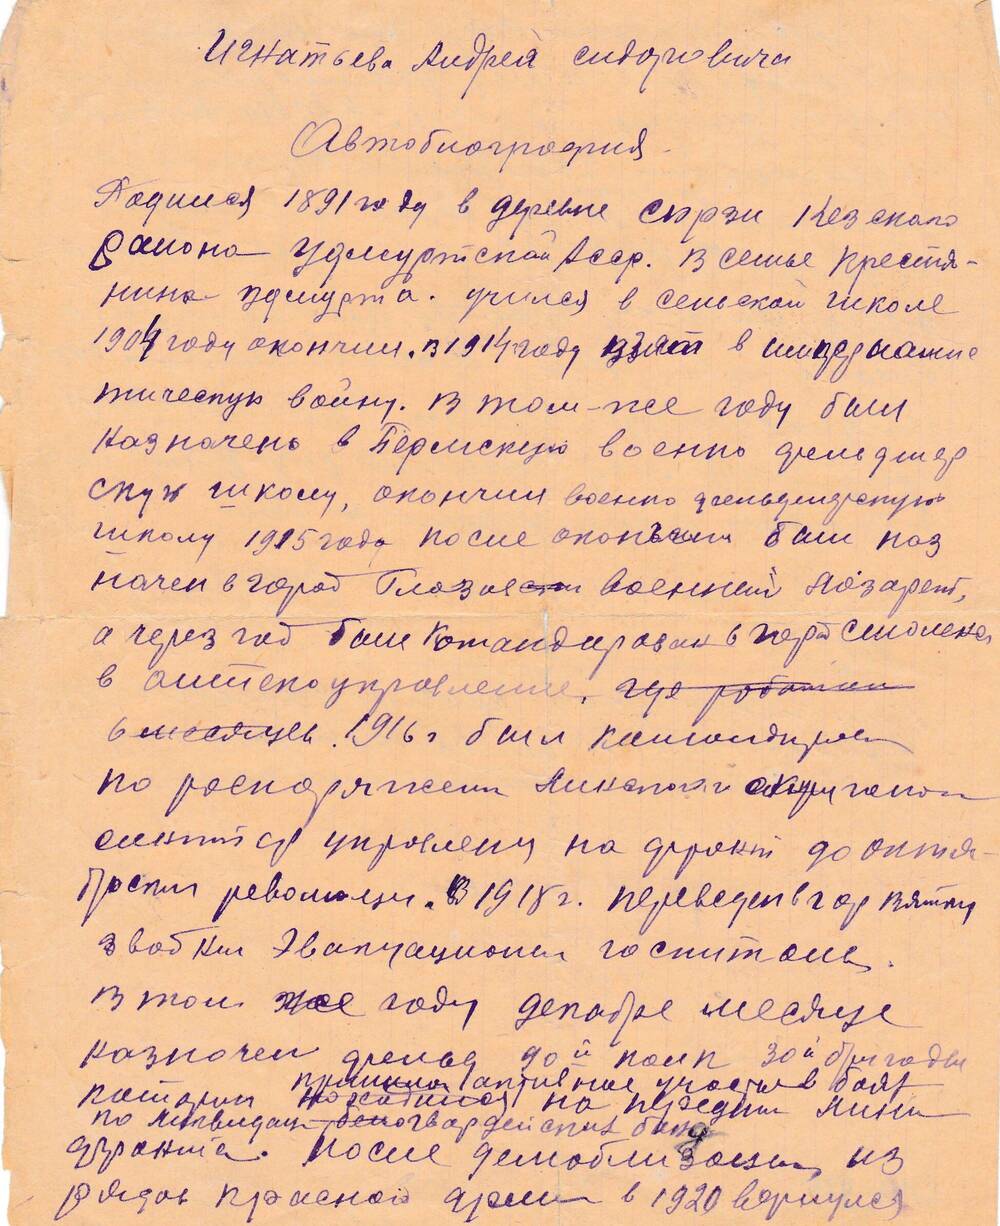 Автобиография Игнатьева Андрея Сидоровича датирована 
30.11.1949 г.